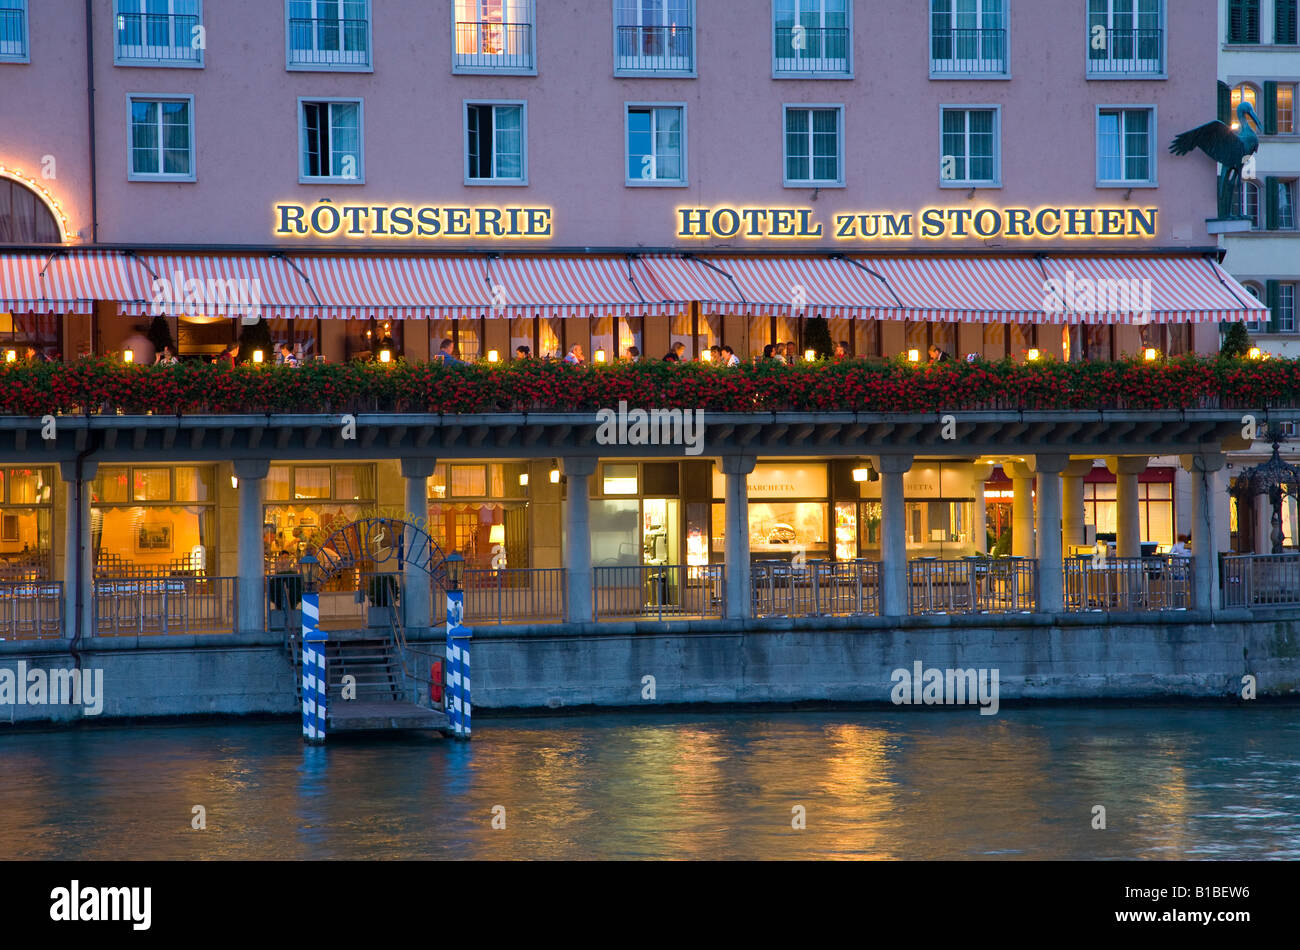 Switzerland, Zurich, Hotel Restaurant Zum Storchen on the waterfront Stock Photo